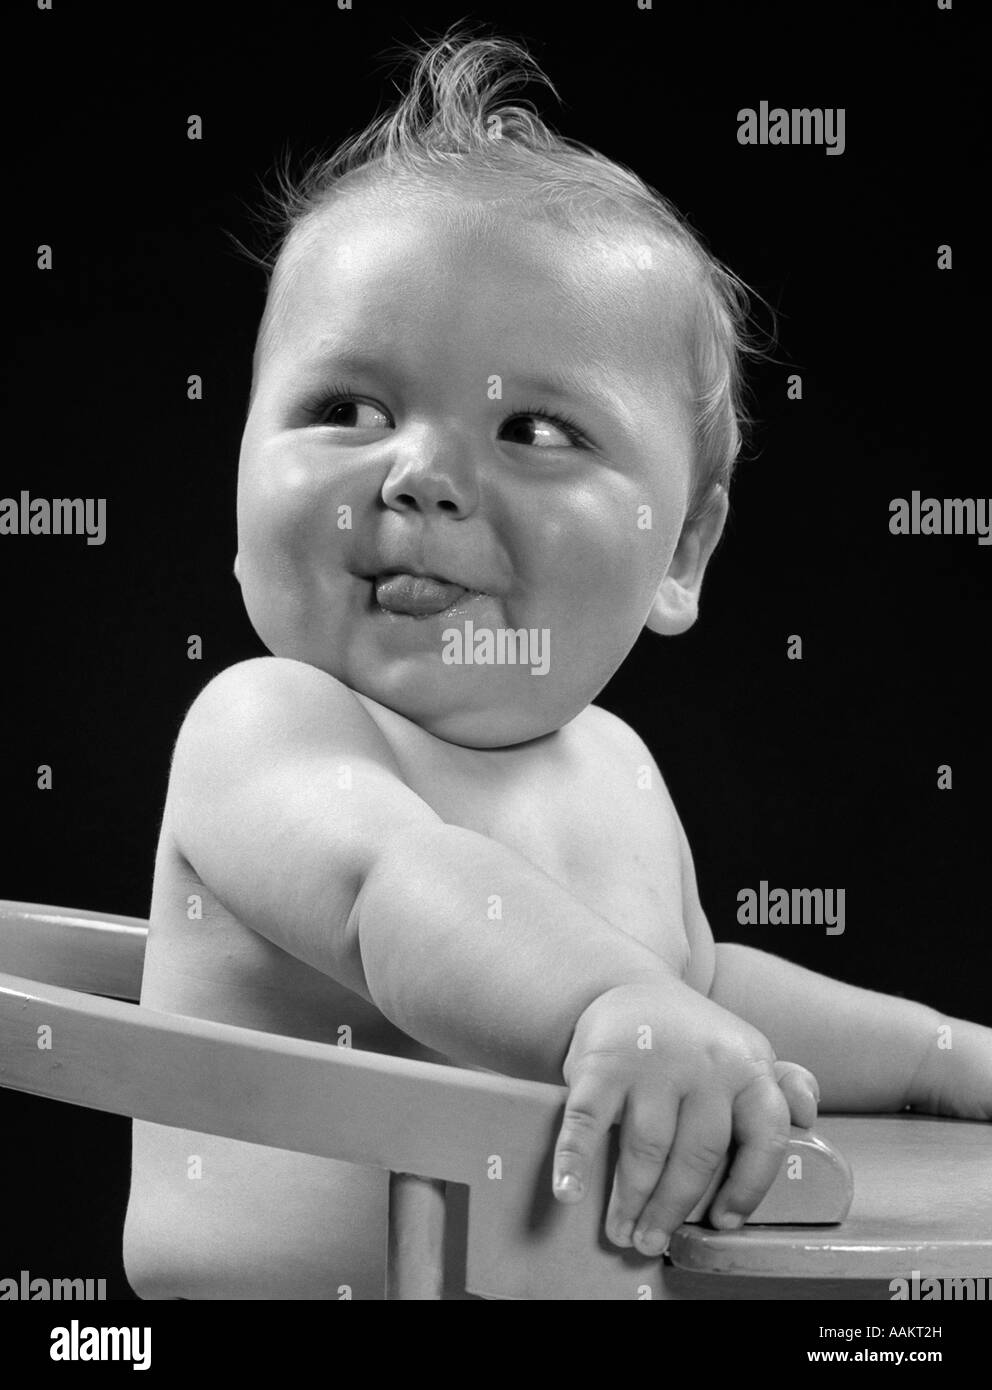 Années 1950 Années 1940 bébé dans une chaise haute tête tournée sur un côté AVEC LA LANGUE QUI SORT L'EXPRESSION DU VISAGE Drôle Banque D'Images